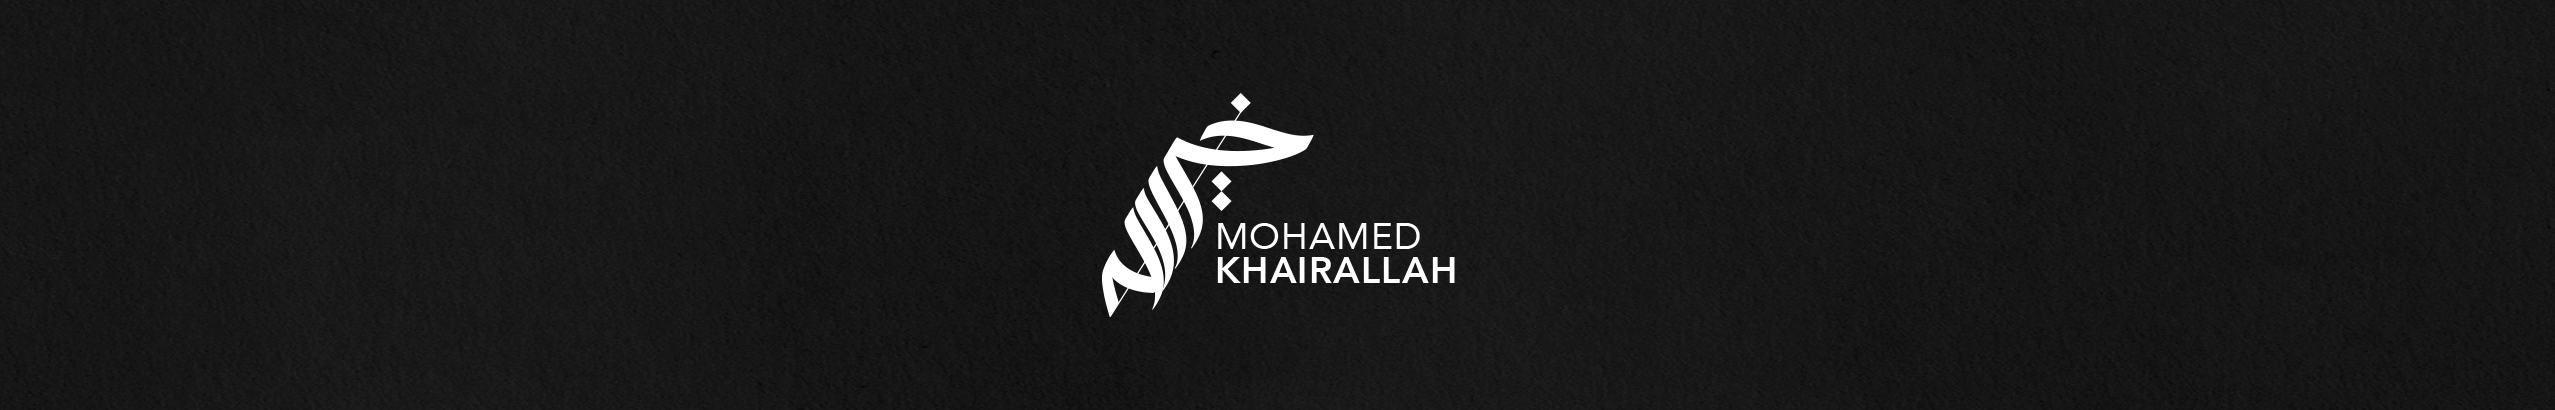 Mohamed Khairallahs profilbanner